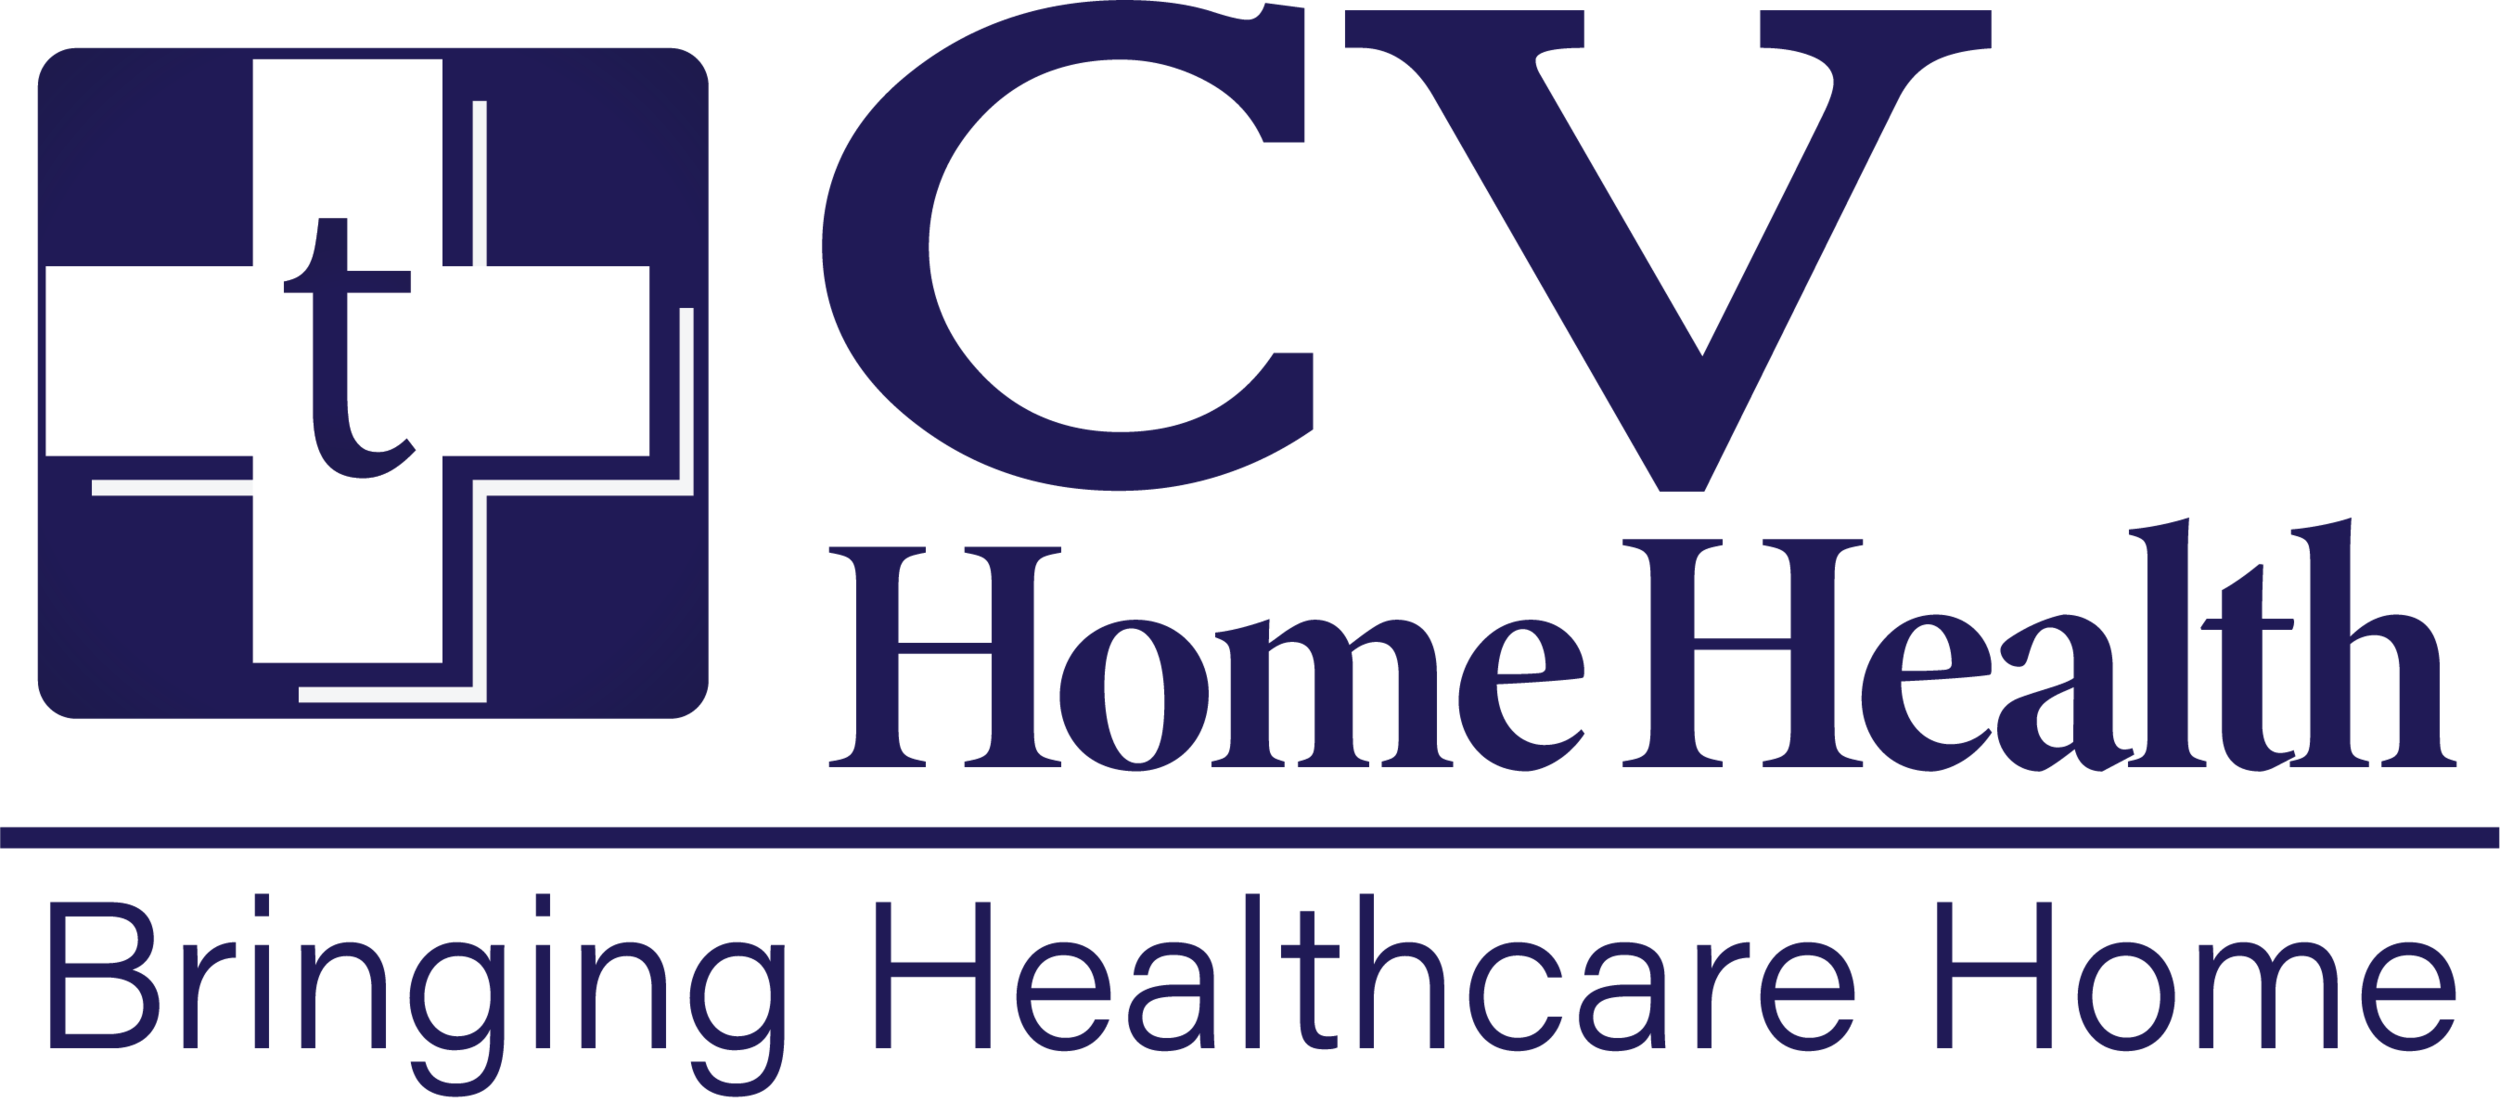 CV Home Health